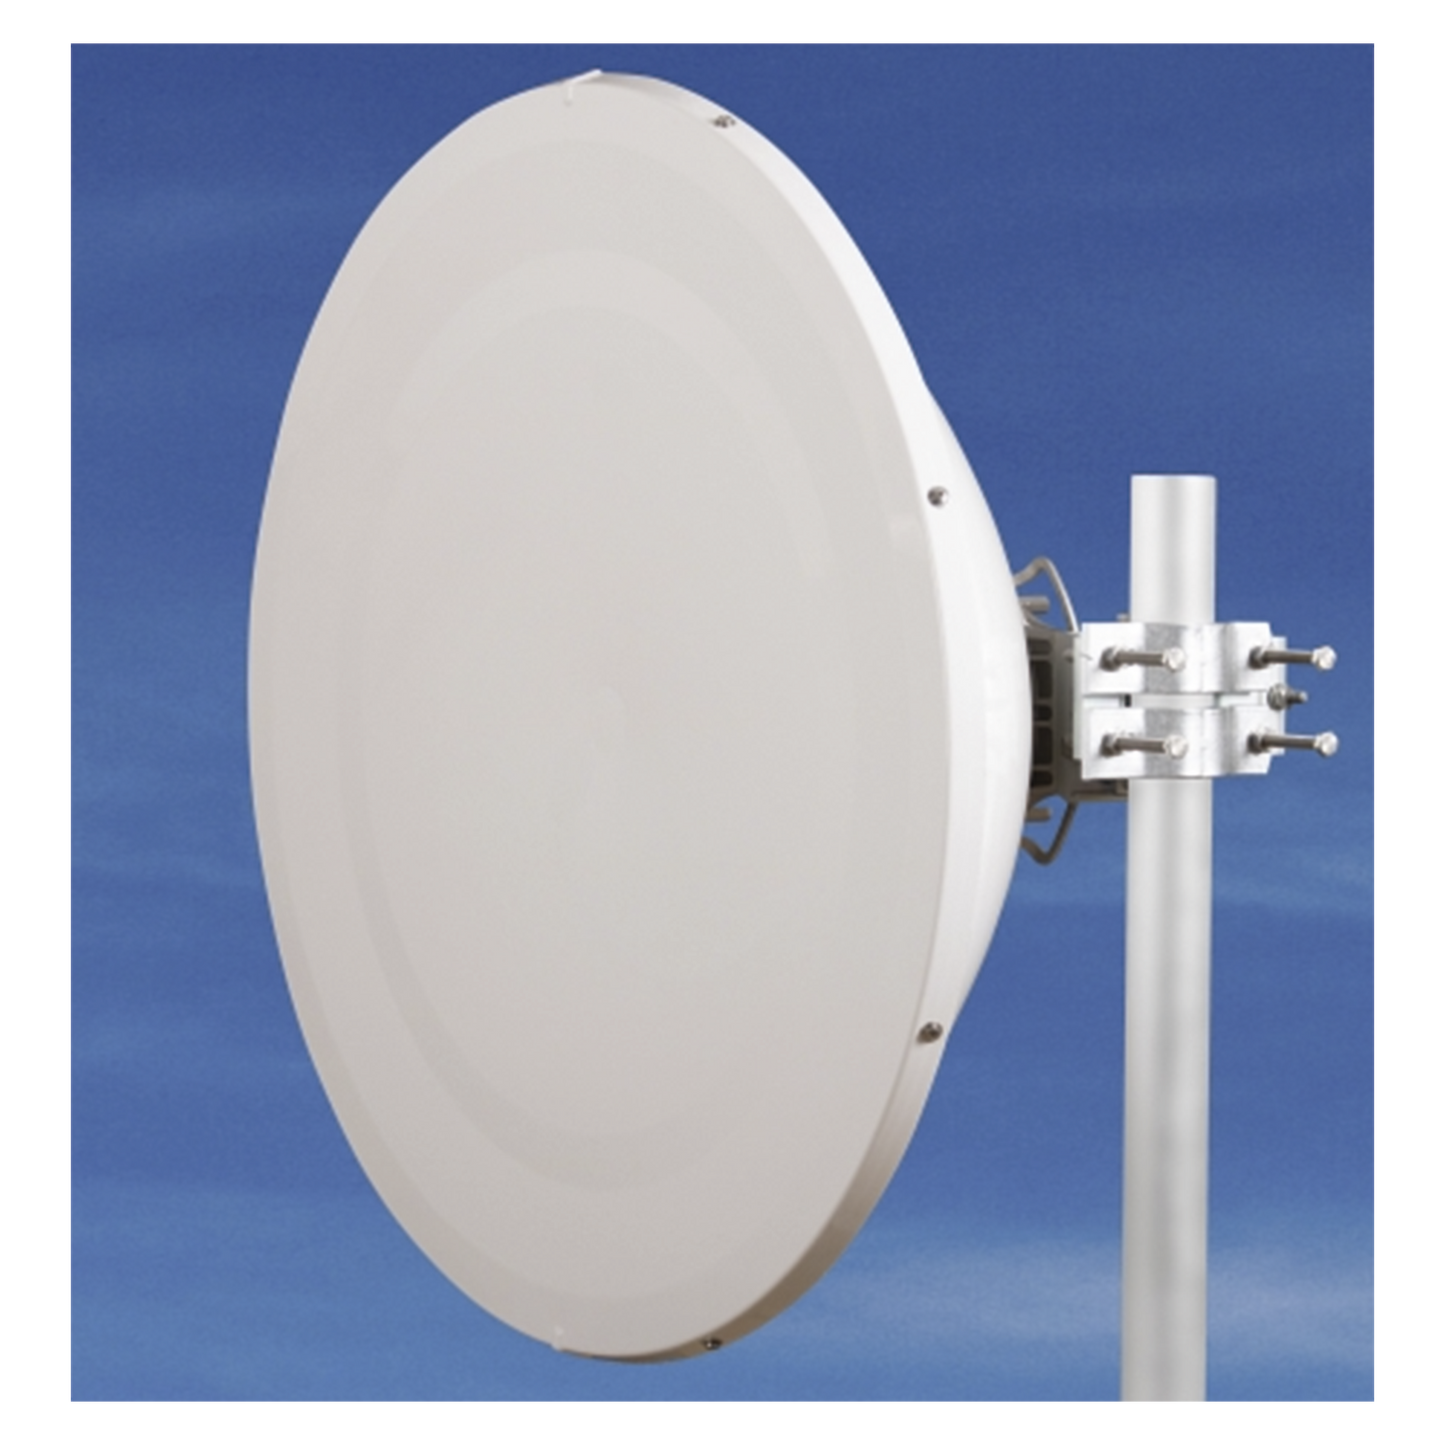 Antena Direccional de Alto Rendimiento/ Parábola profunda para mayor aislamiento al ruido/ Conector guía de onda para radio C5x y B5x / 3 ft / 4.9 a 6.4 GHz / Ganancia de 32 dBi / Soporte de acero inoxidable / Incluye montaje.